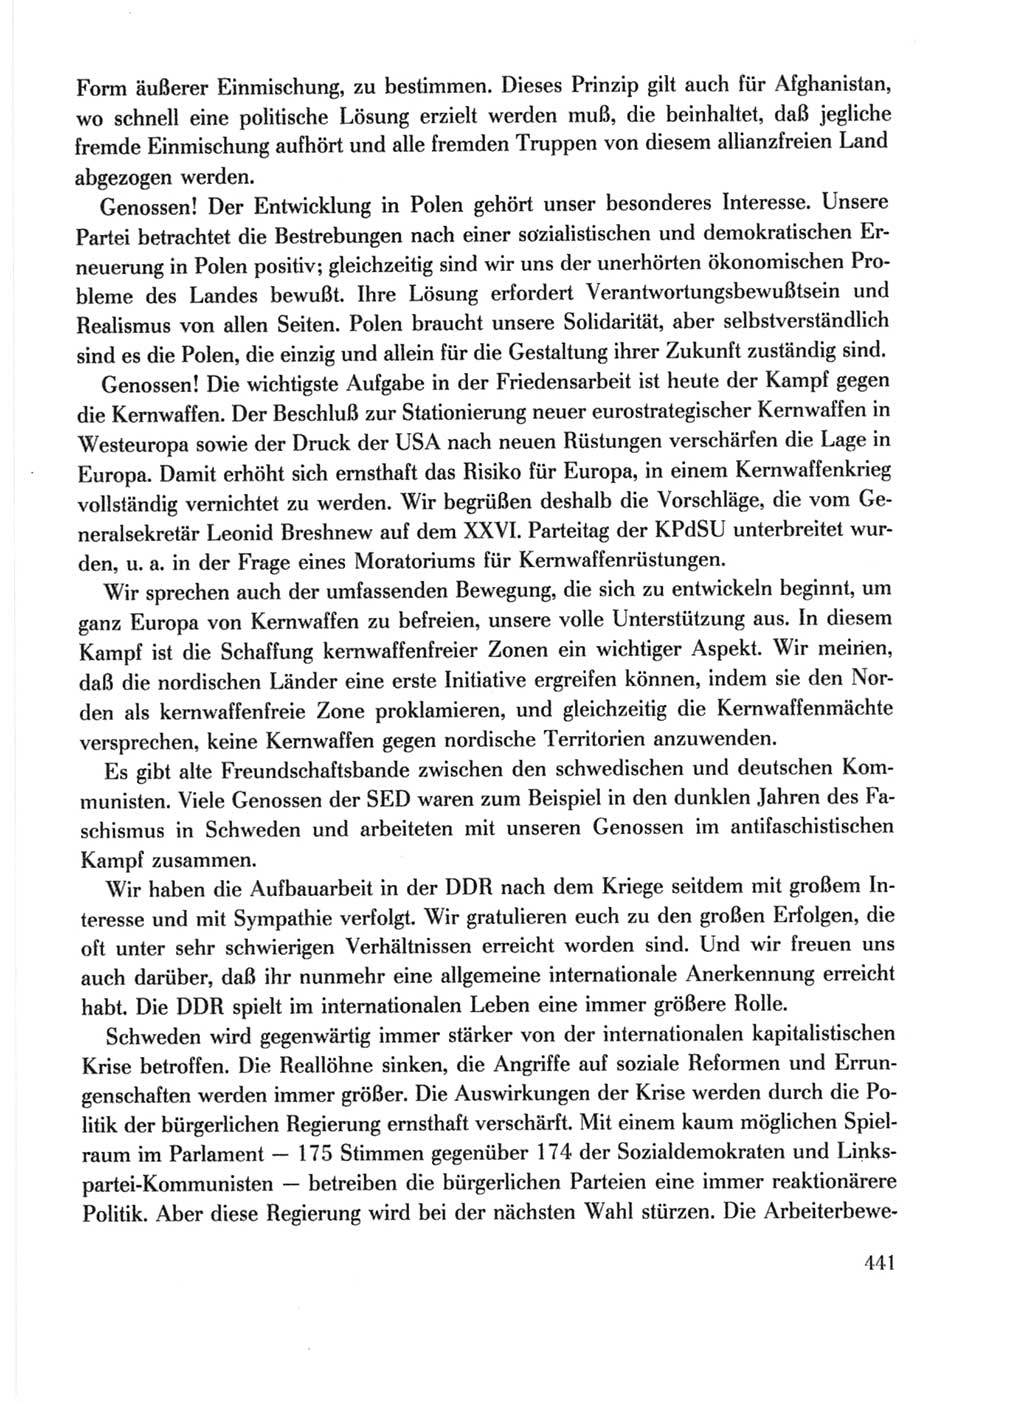 Protokoll der Verhandlungen des Ⅹ. Parteitages der Sozialistischen Einheitspartei Deutschlands (SED) [Deutsche Demokratische Republik (DDR)] 1981, Band 1, Seite 441 (Prot. Verh. Ⅹ. PT SED DDR 1981, Bd. 1, S. 441)